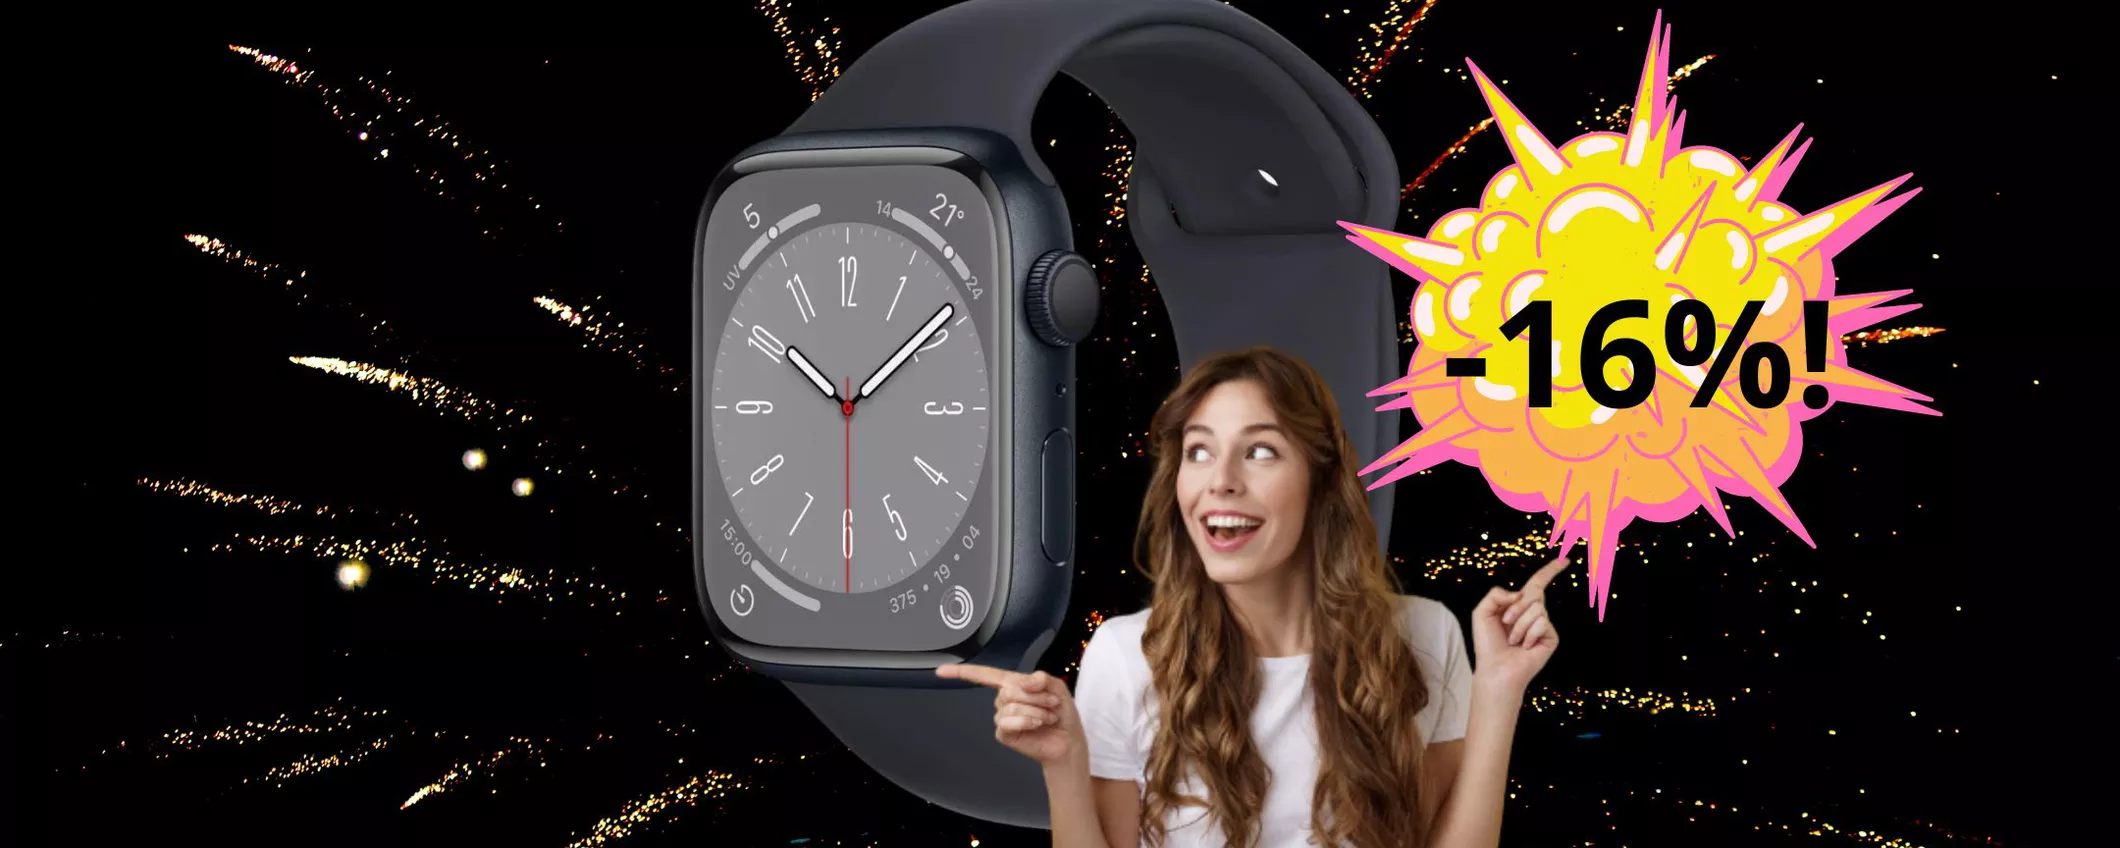 Lo spaziale Apple Watch 8 finalmente SCONTATO: chiama anche i soccorsi al posto tuo!